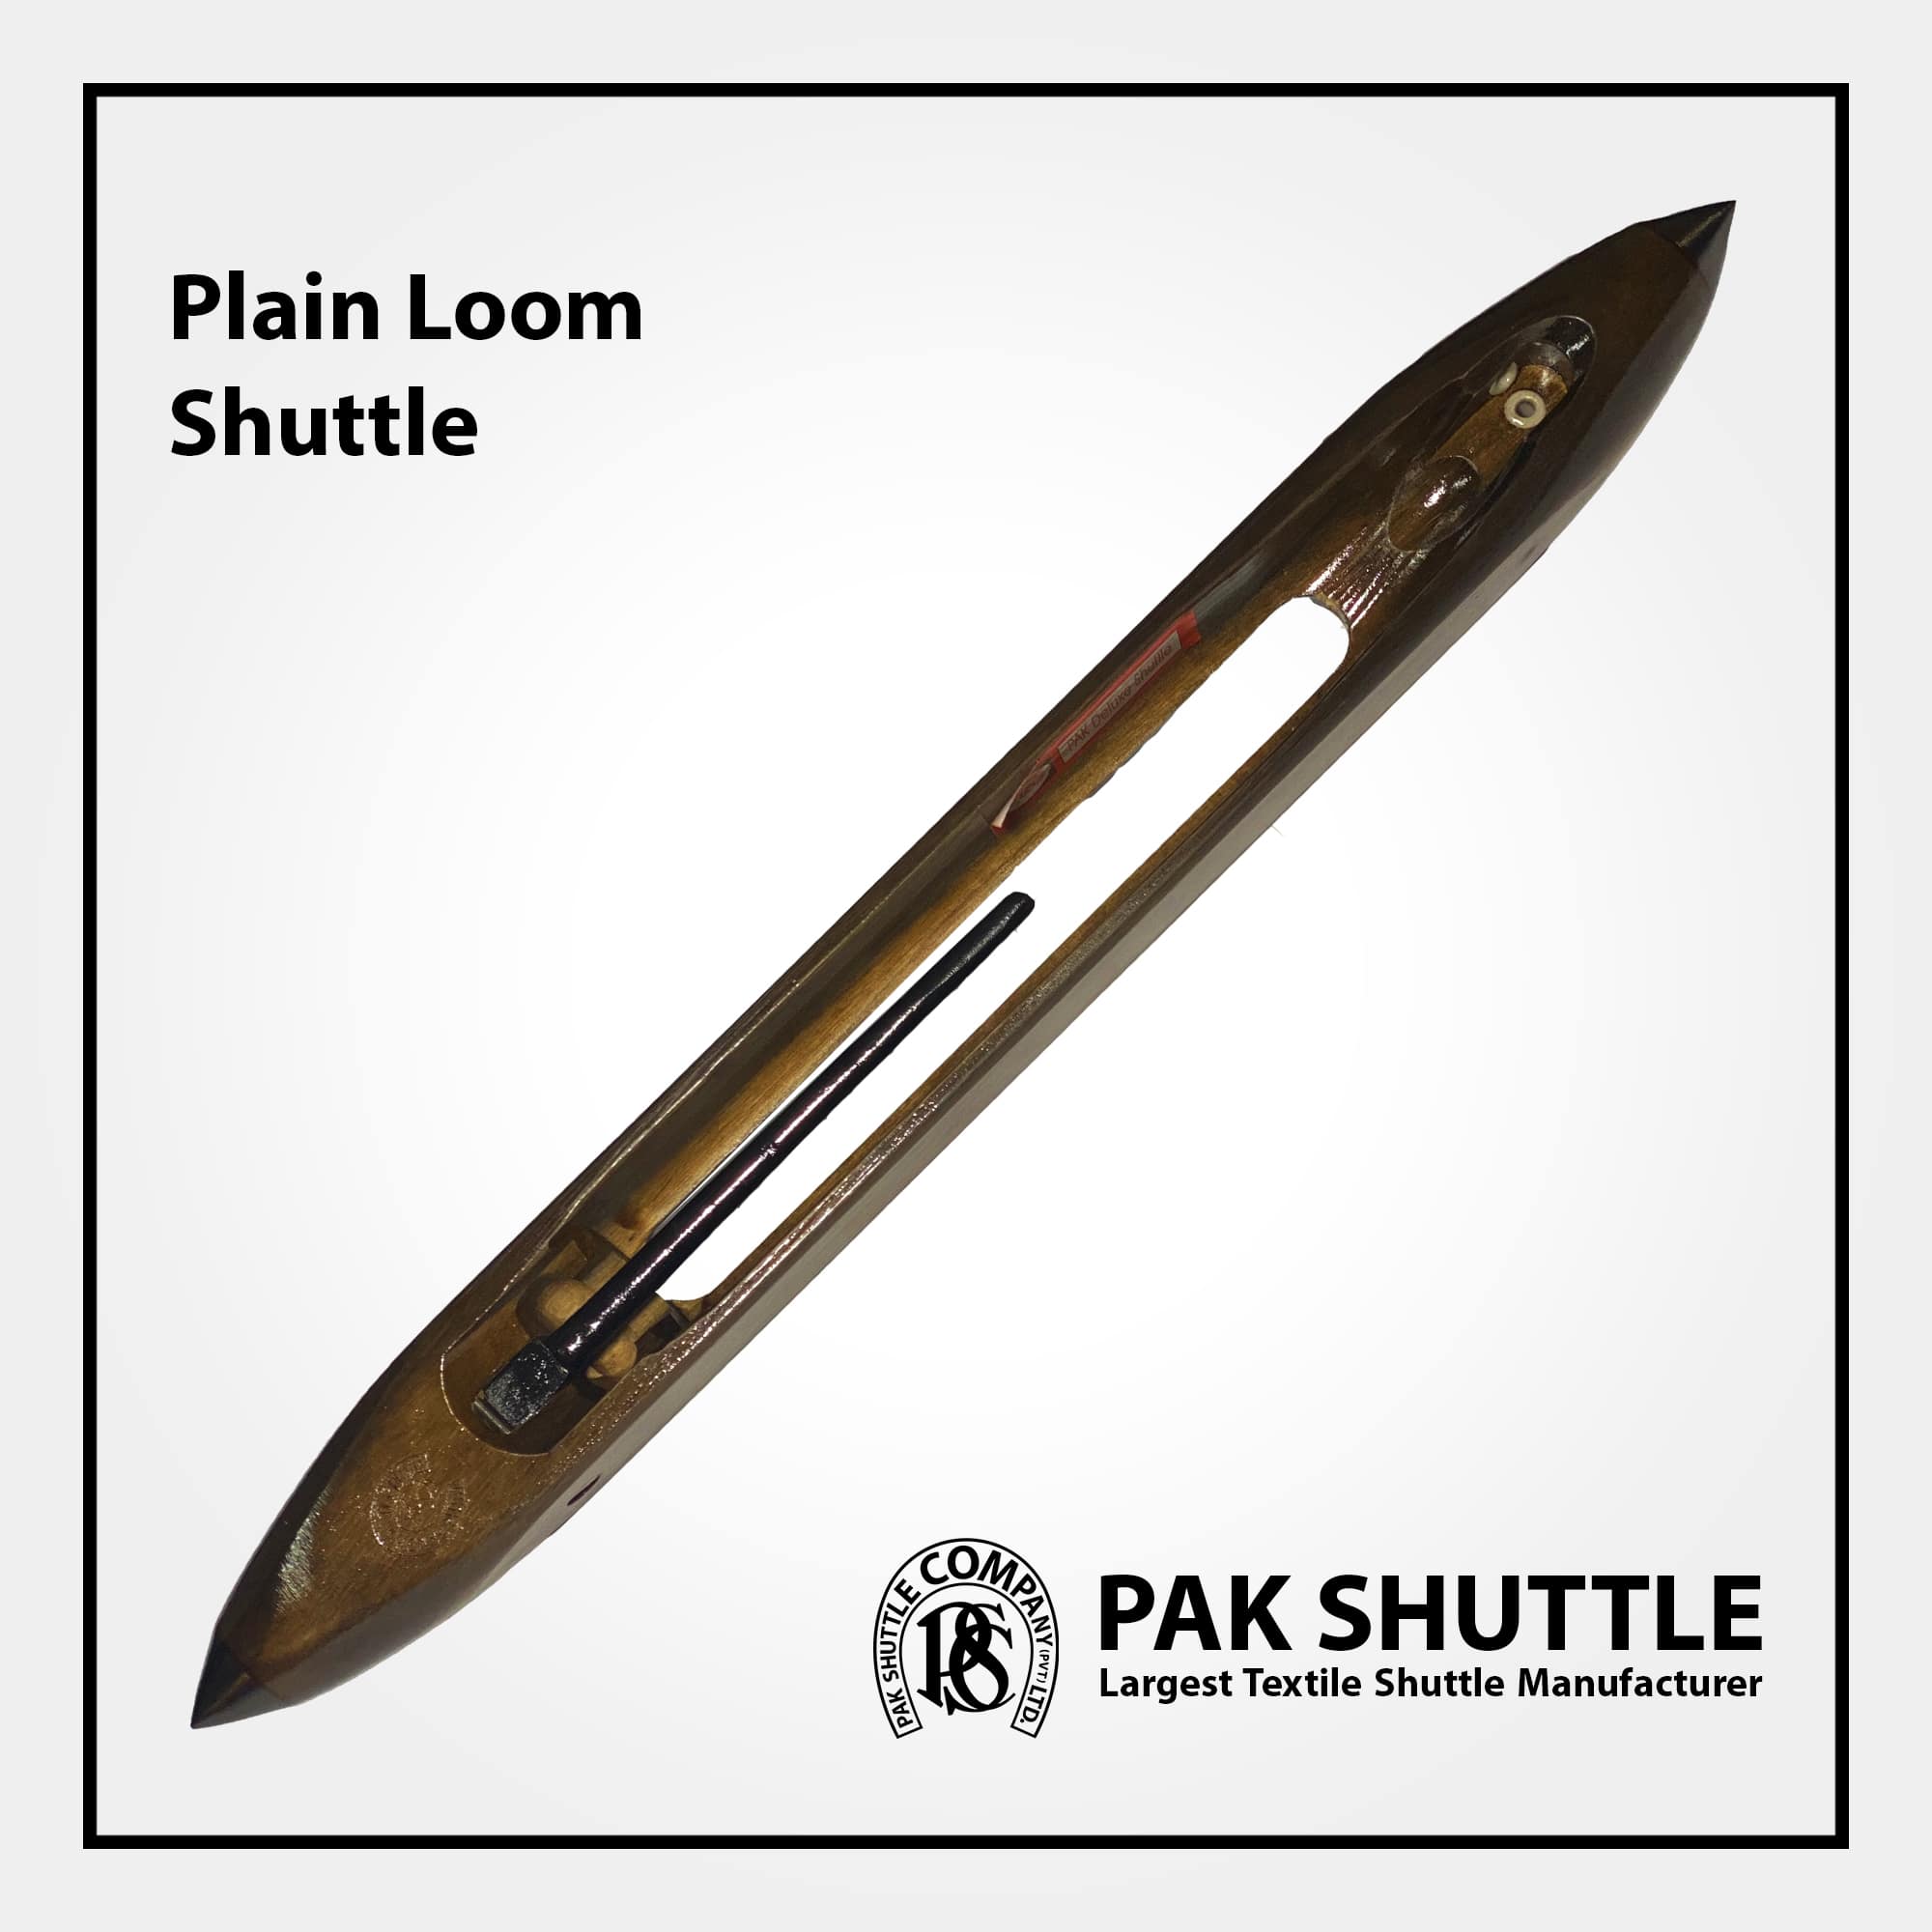 Plain Loom Shuttle by Pak Shuttle Company Pvt Ltd.